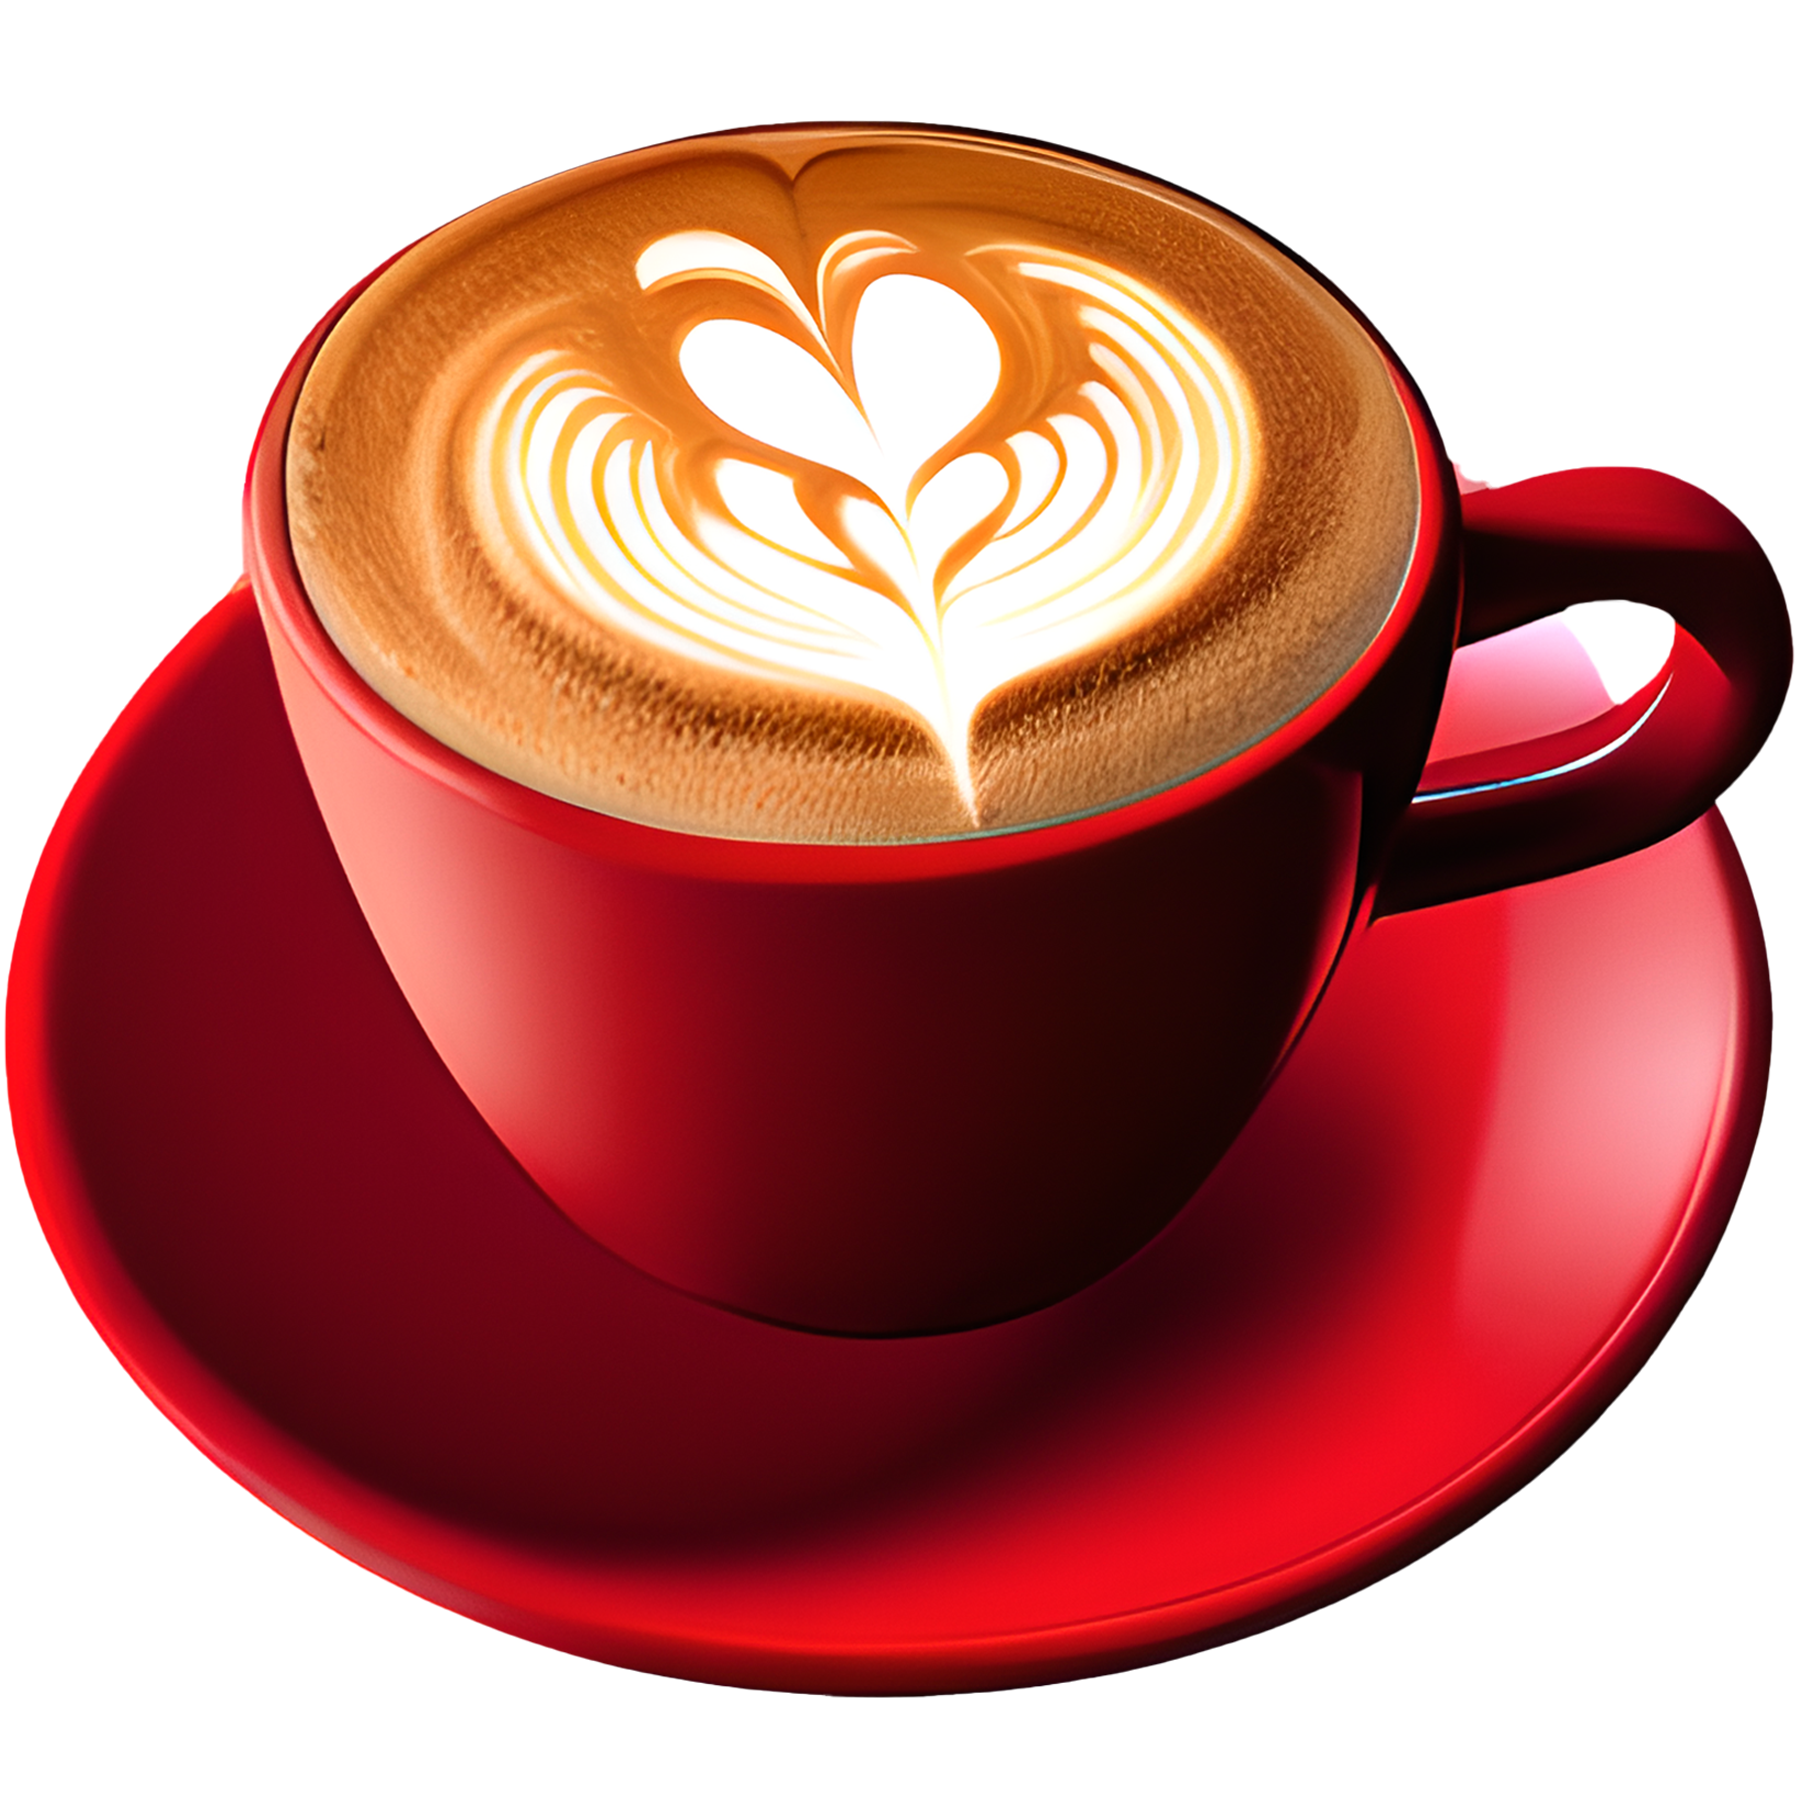 Café capuchino caliente con un corazón de espuma servido en una taza roja. 5